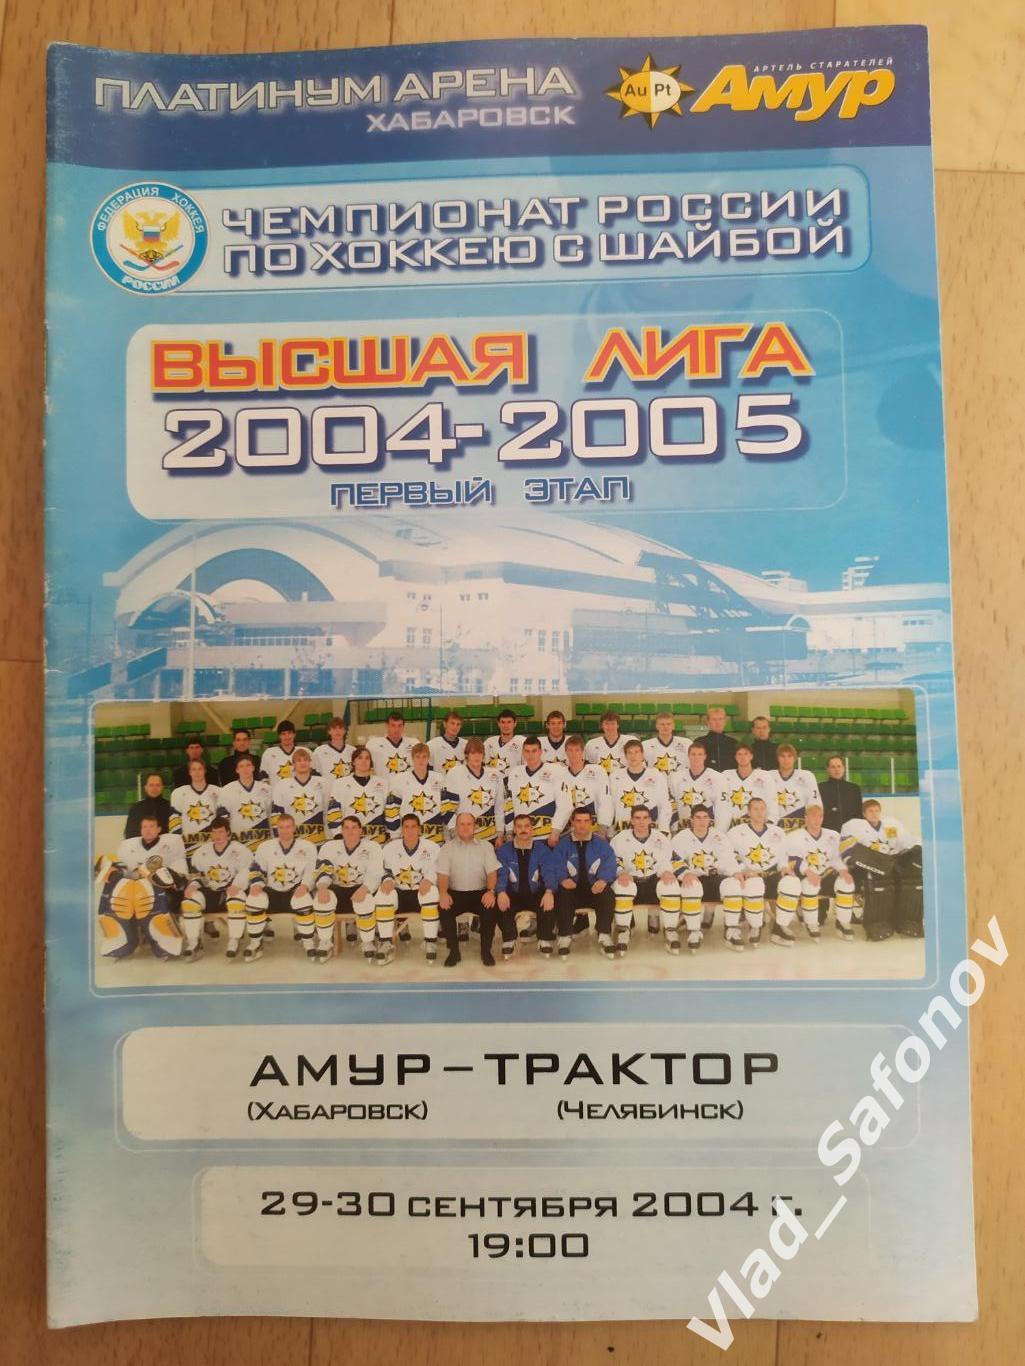 Амур(Хабаровск) - Трактор(Челябинск). Высшая лига. 29-30/09/2004